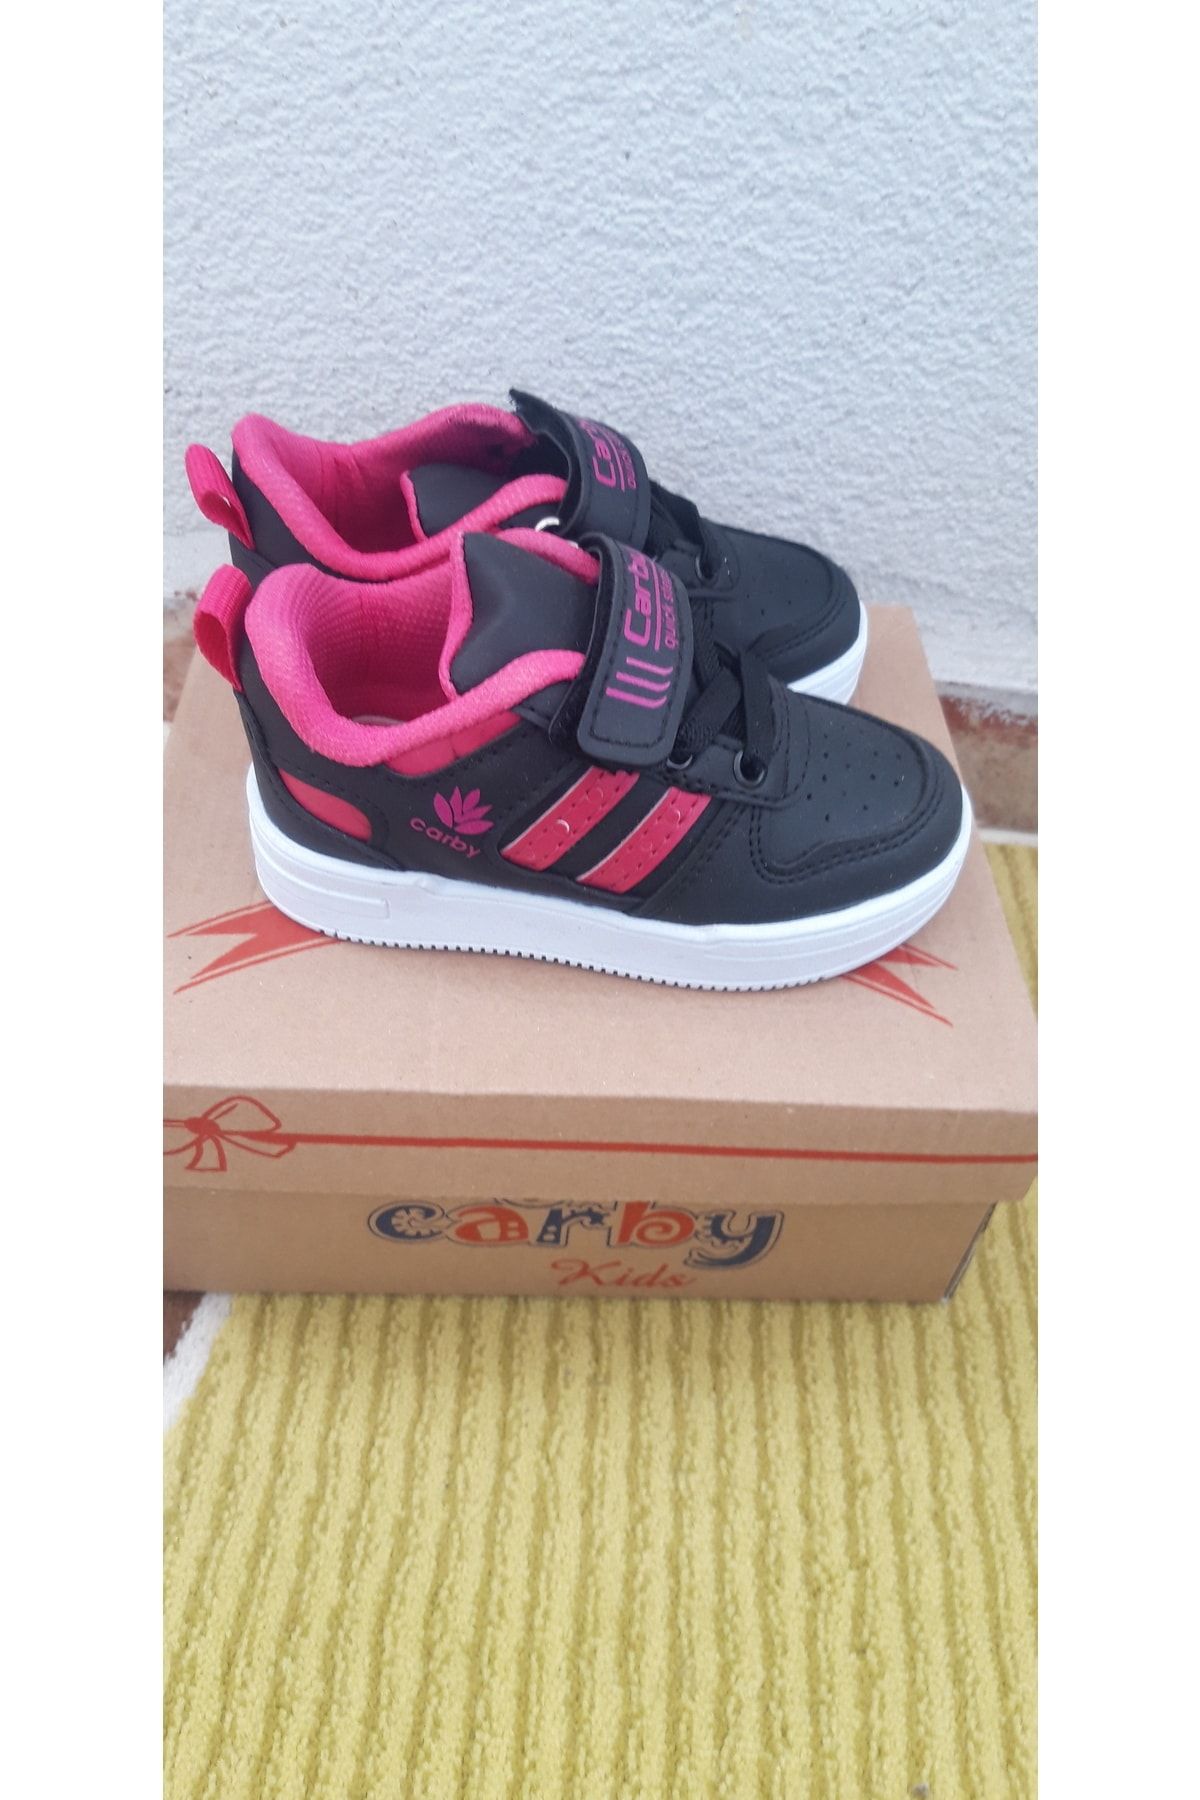 İREM Carby Kids Kız Bebek Spor Ayakkabı